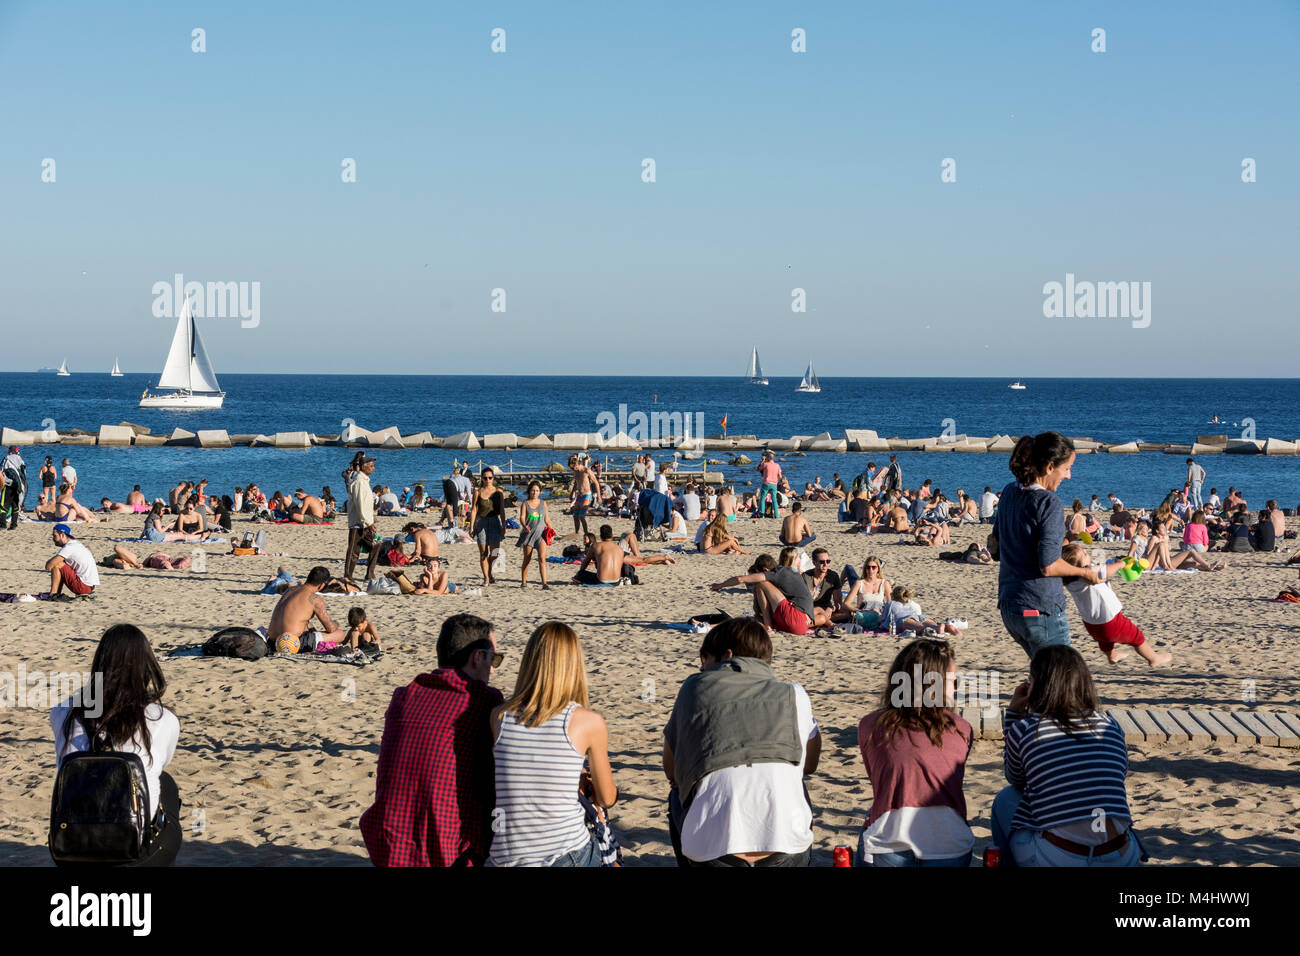 Strand von Barcellona un einem gut besuchten Sonntag im Herbst mit vielen Spaziergängern und Badenden Foto Stock